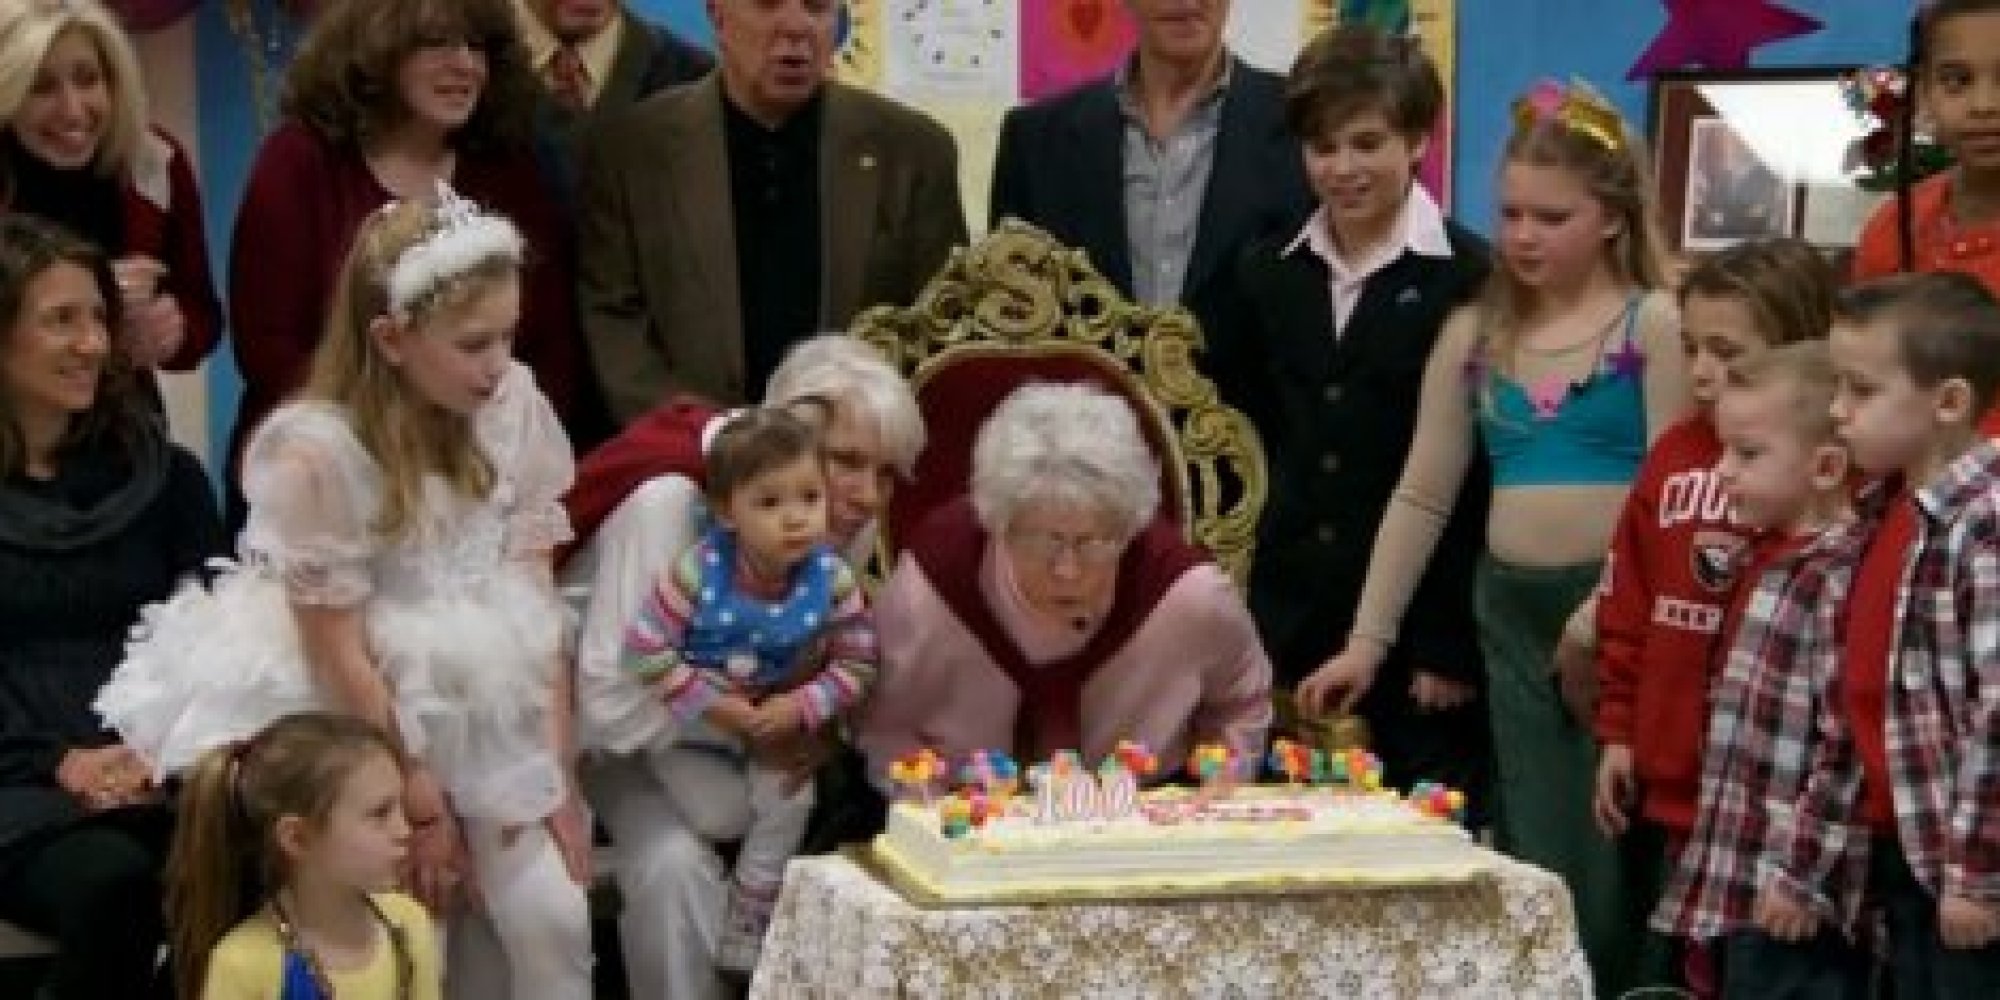 Agnes 'Granny' Zhelesnik, America's Oldest Working Teacher, Turns 100